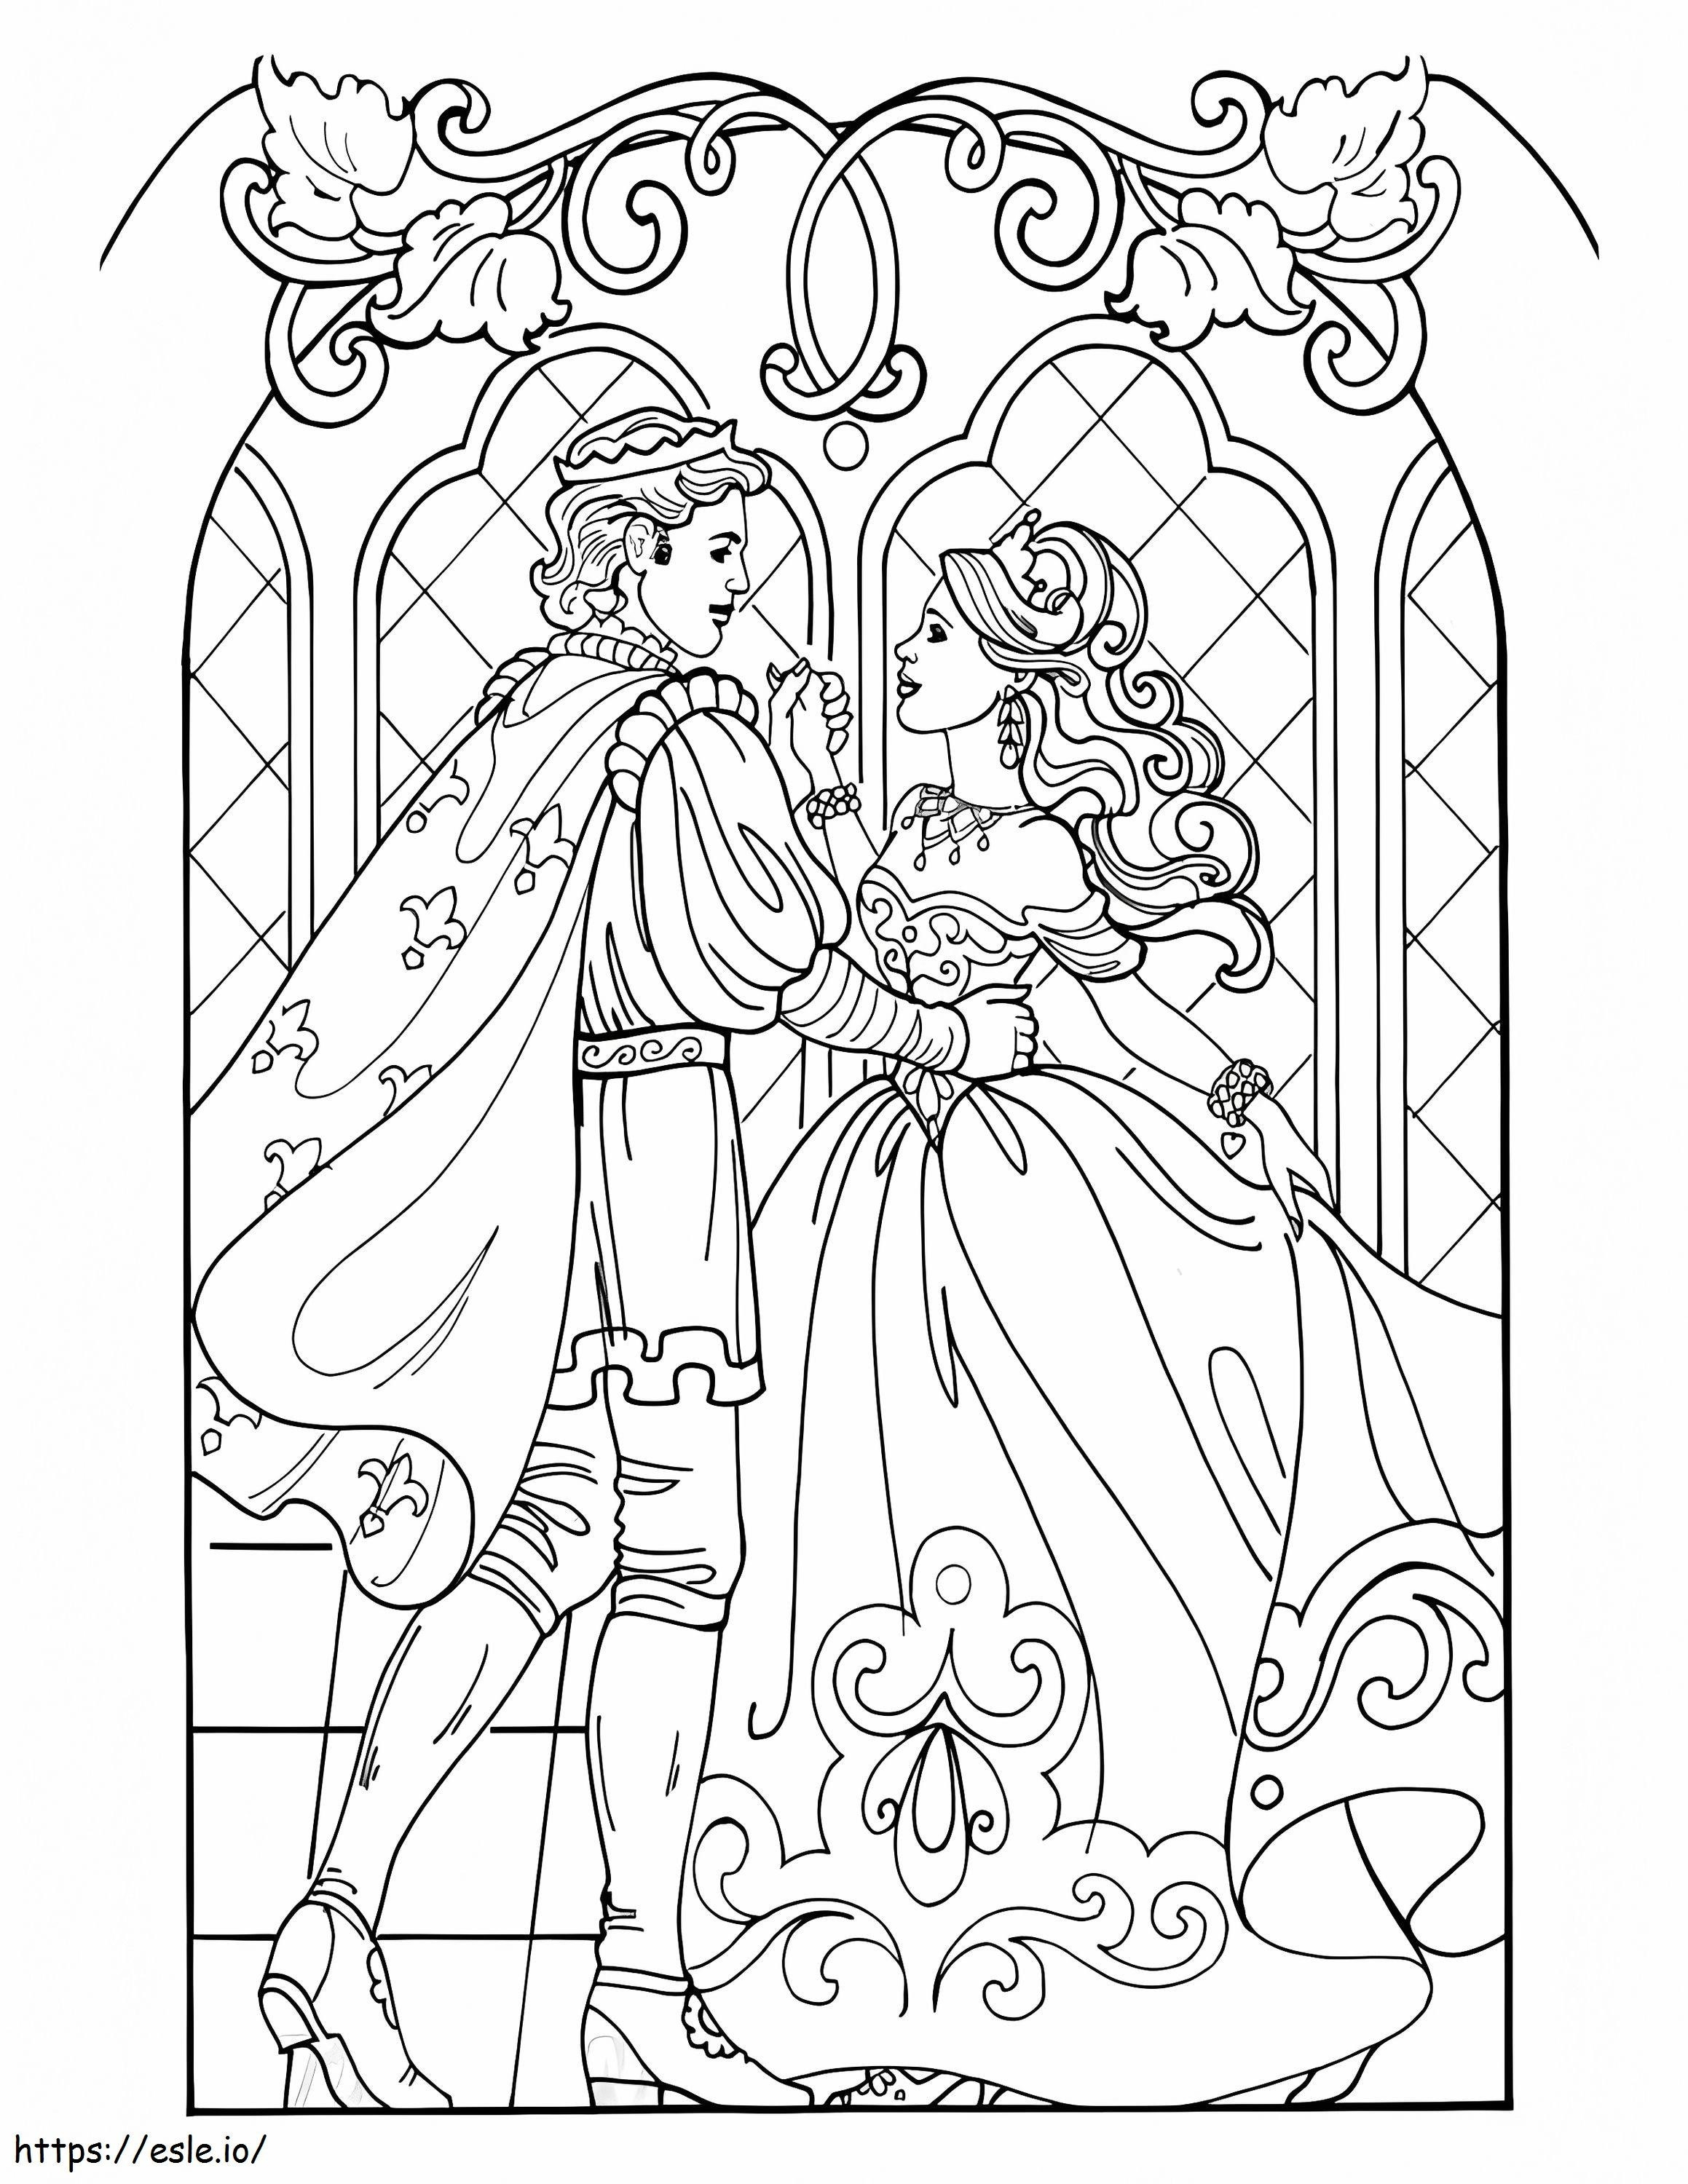 La principessa Leonora e il principe da colorare